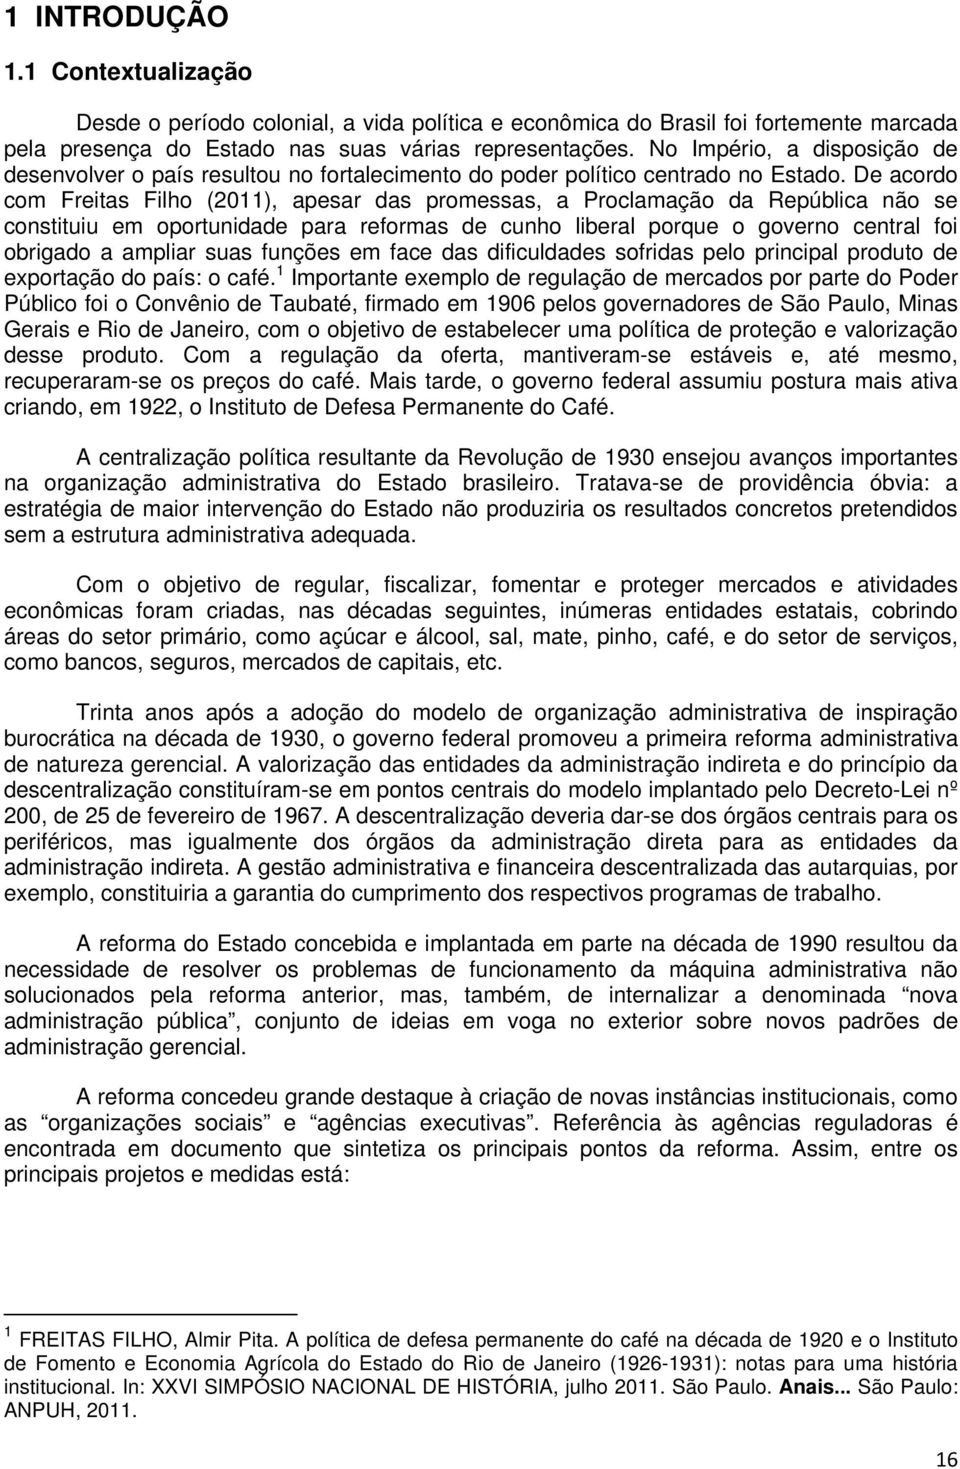 De acordo com Freitas Filho (2011), apesar das promessas, a Proclamação da República não se constituiu em oportunidade para reformas de cunho liberal porque o governo central foi obrigado a ampliar